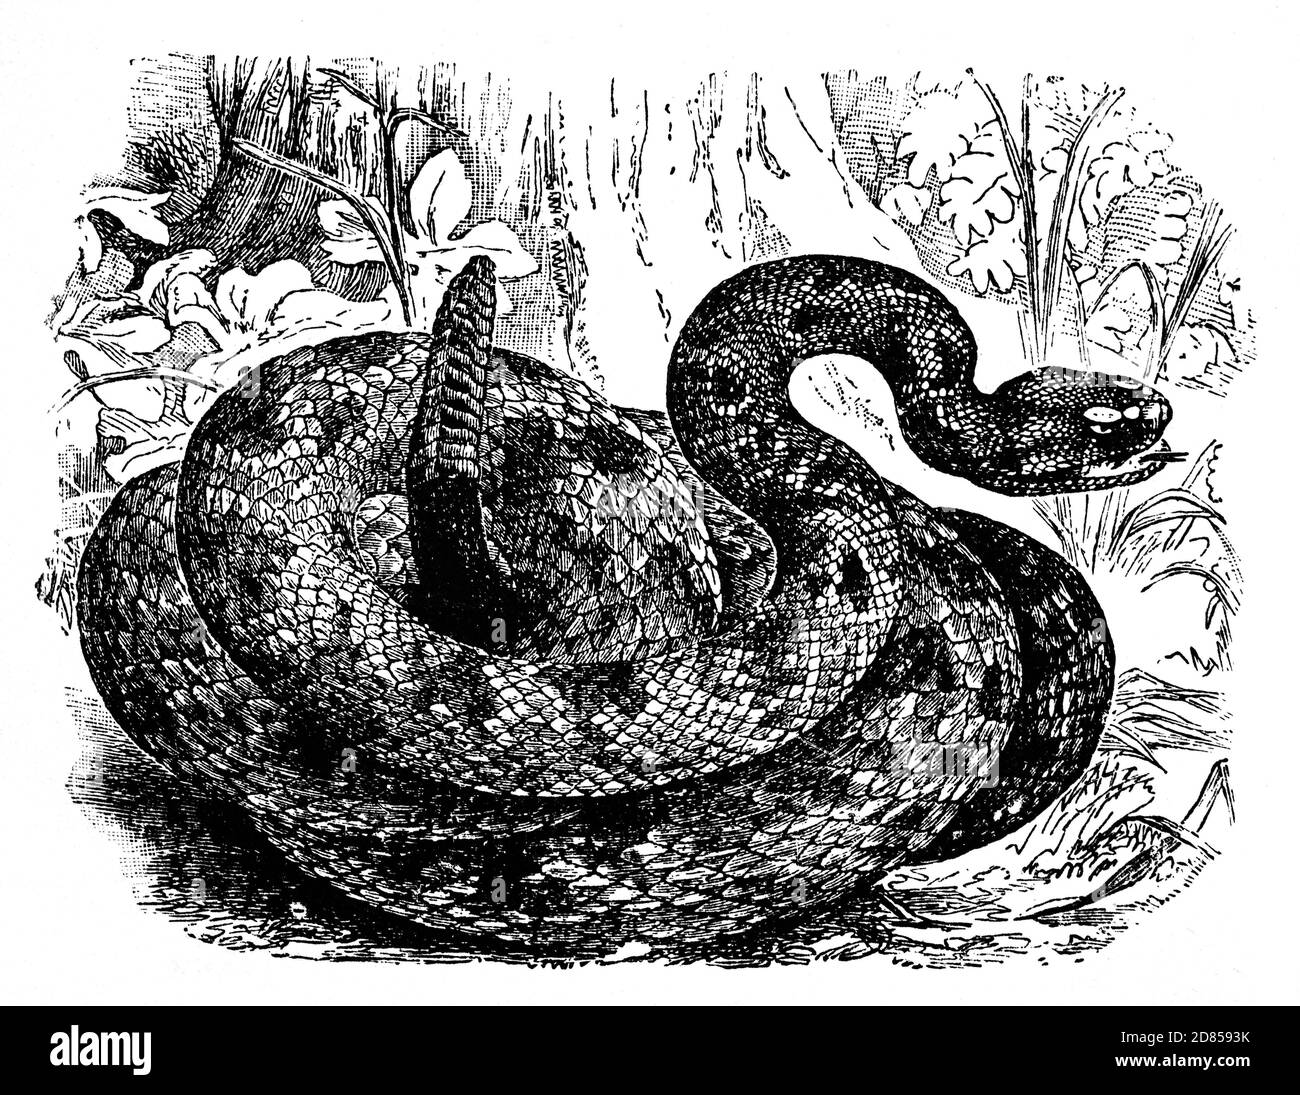 Illustration du XIXe siècle d'un crotale, un groupe de serpents venimeux des genres Crotalus et Sistrurus de la sous-famille des Crotalinae (les vipers à fosse). Les 36 espèces connues de crotale sont indigènes aux Amériques, du Canada au centre de l'Argentine. Ils ont reçu leur nom du hochet situé au bout de leur queue, utilisé pour dissuader les prédateurs ou sert d'avertissement aux passants. Banque D'Images